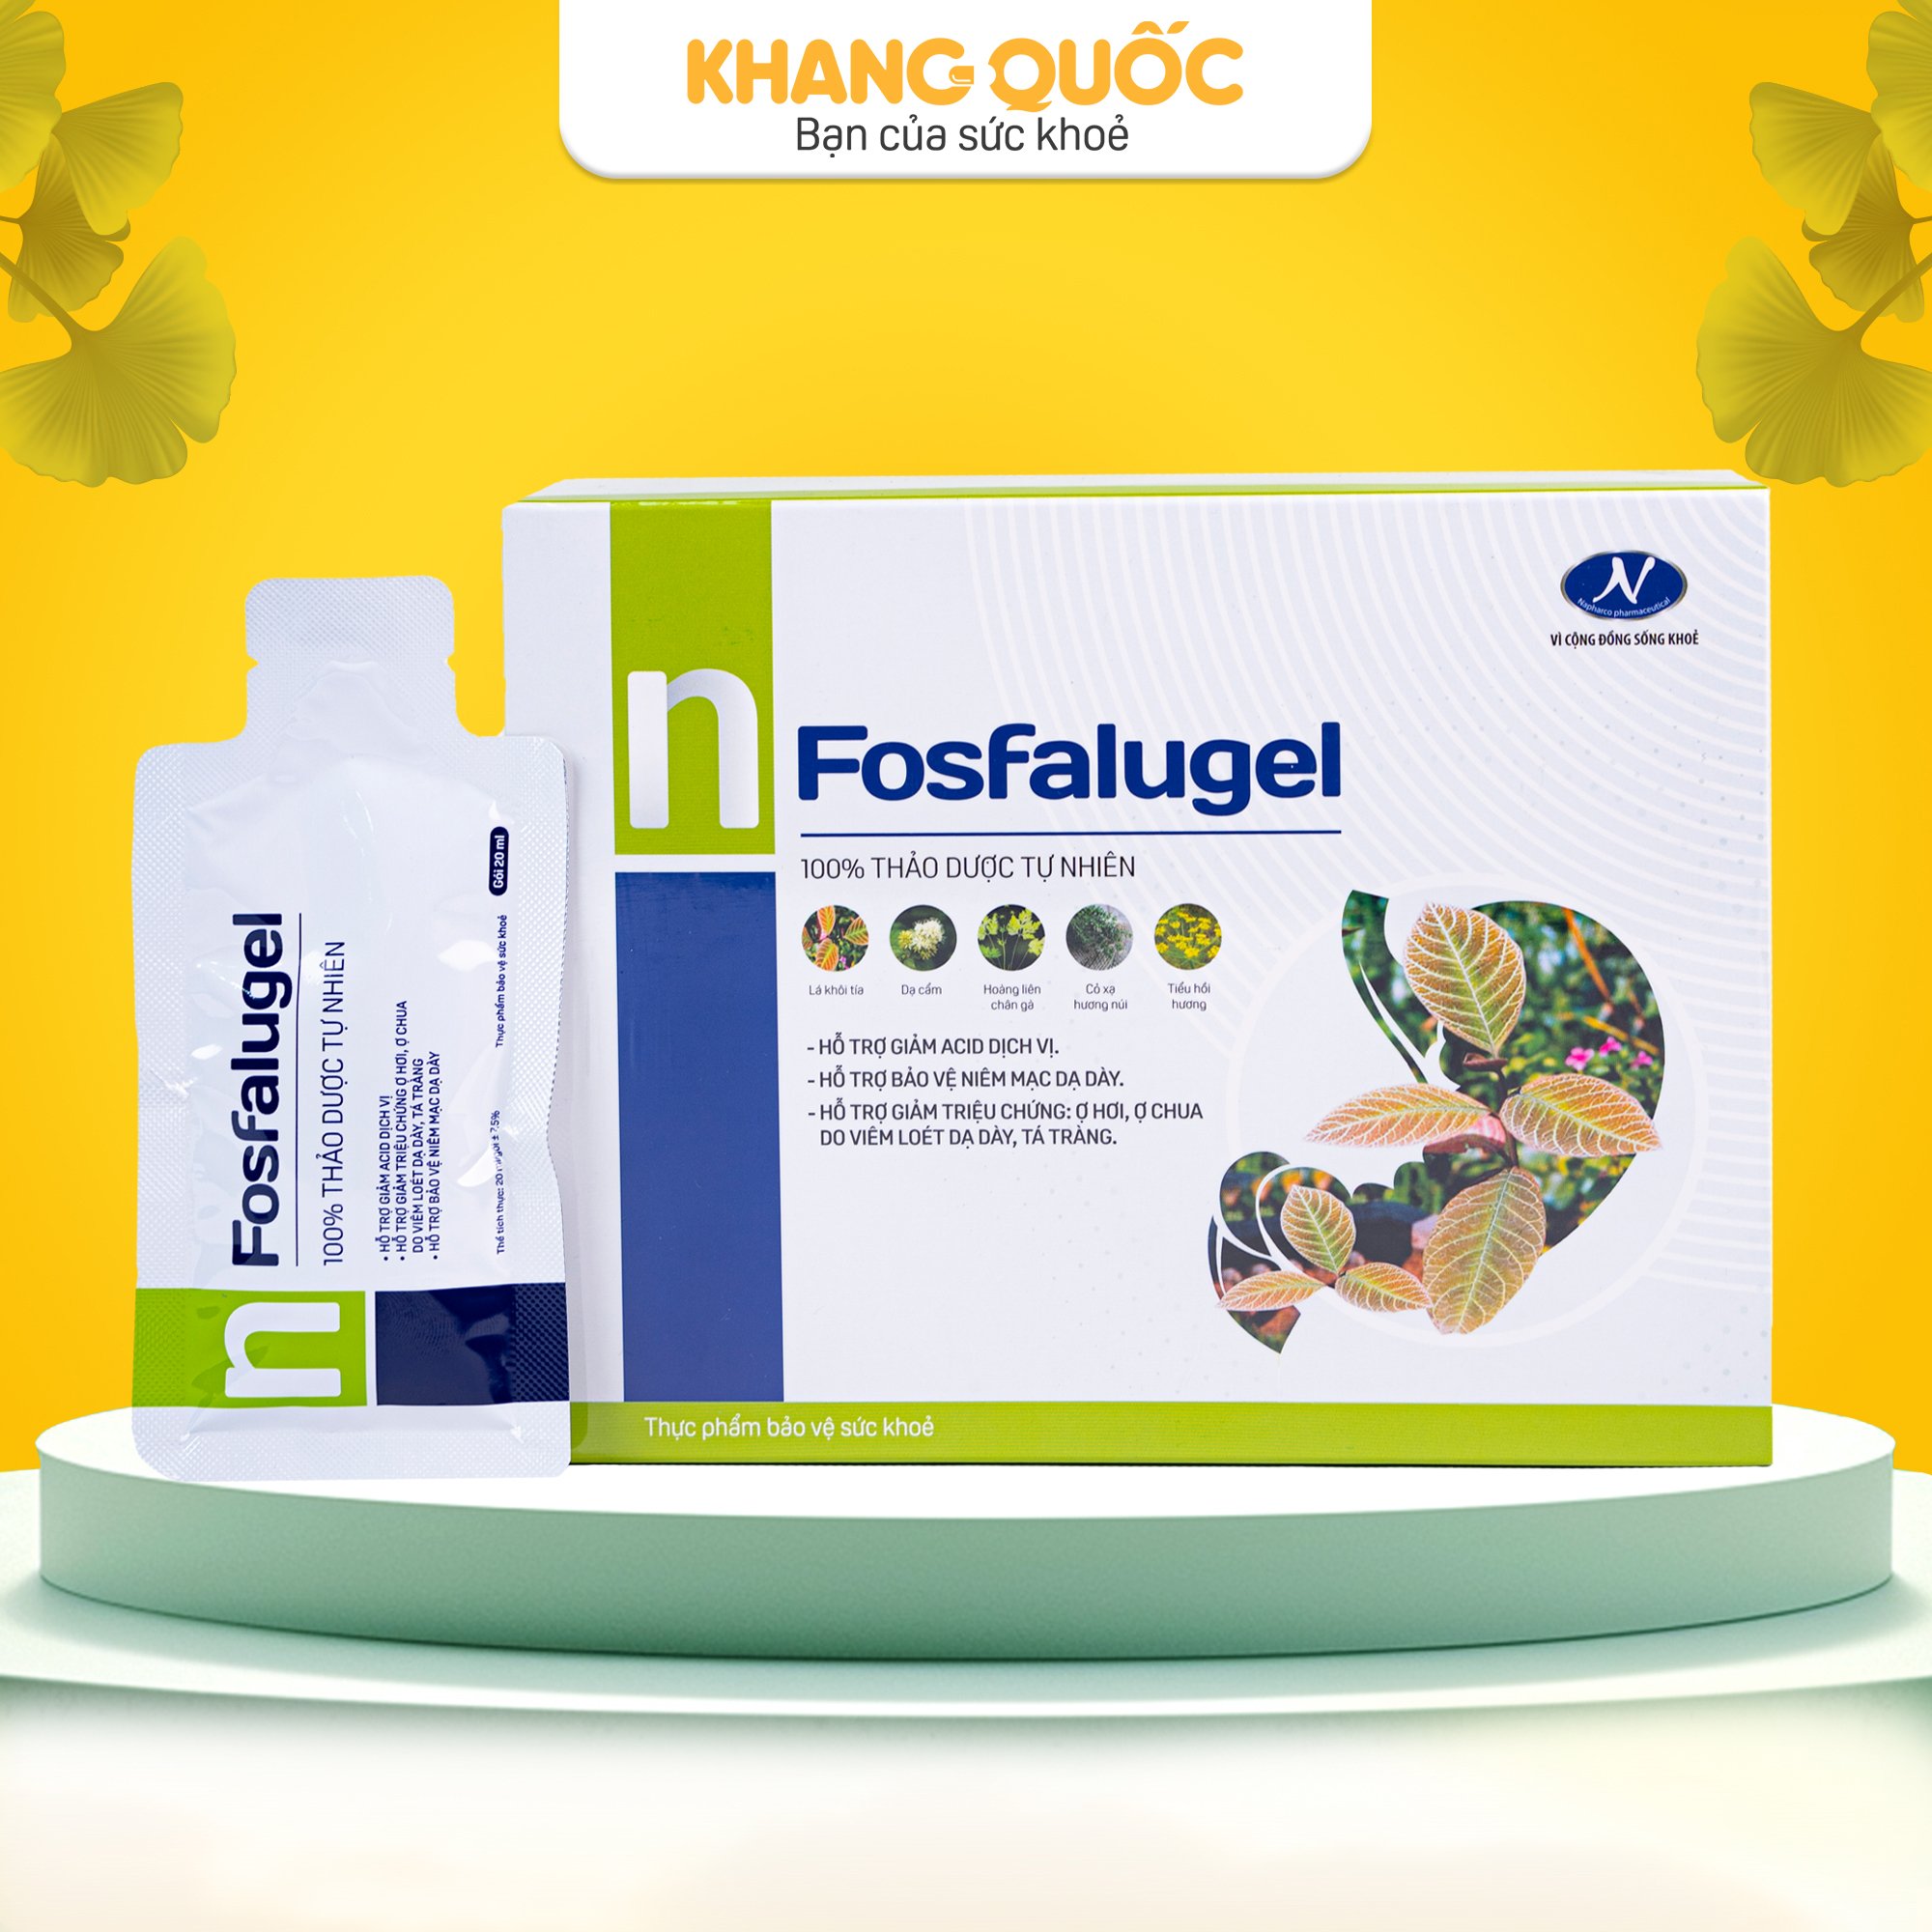 Fosfaligel hỗ trợ giảm đau dạ dày từ thảo dược